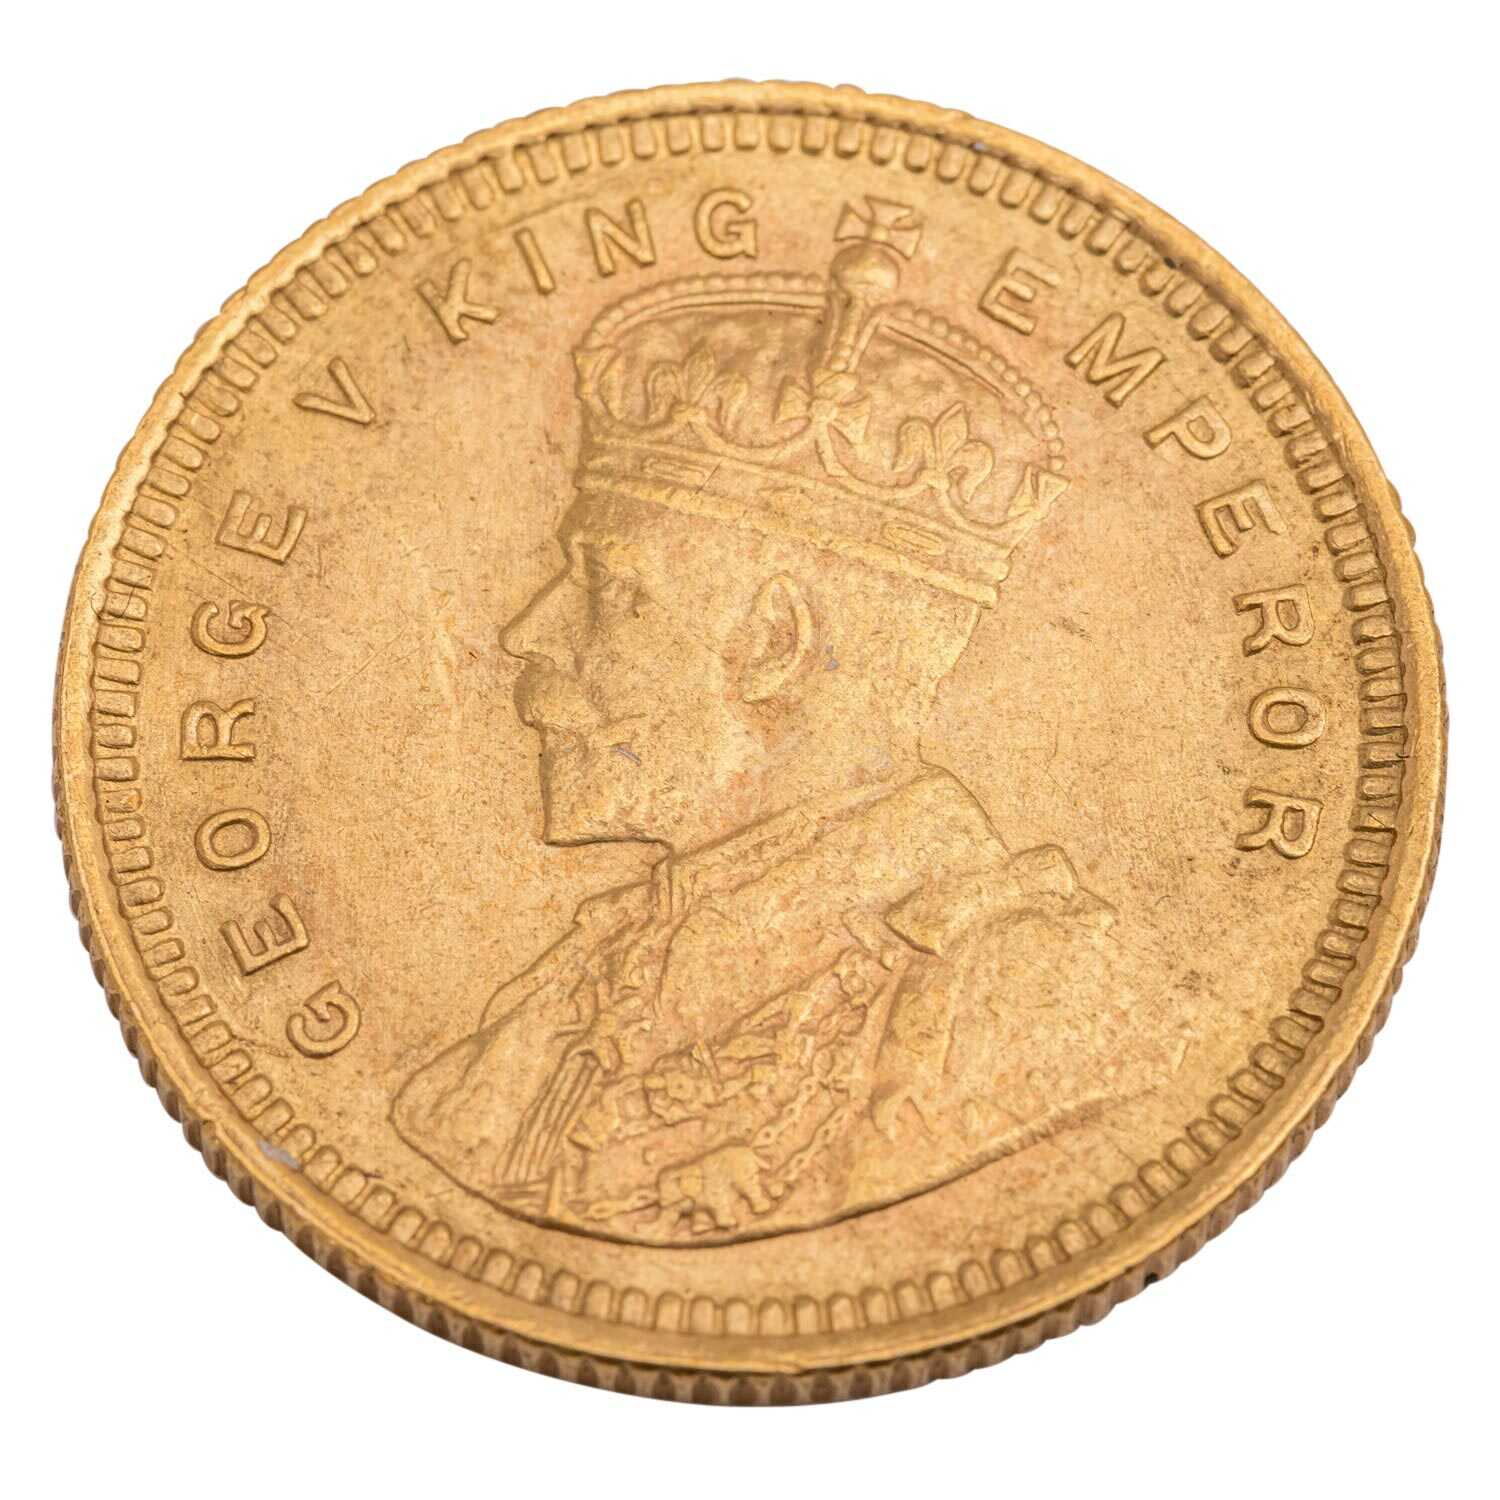 British-India /GOLD - George V. 15 Rupees 1918 vz